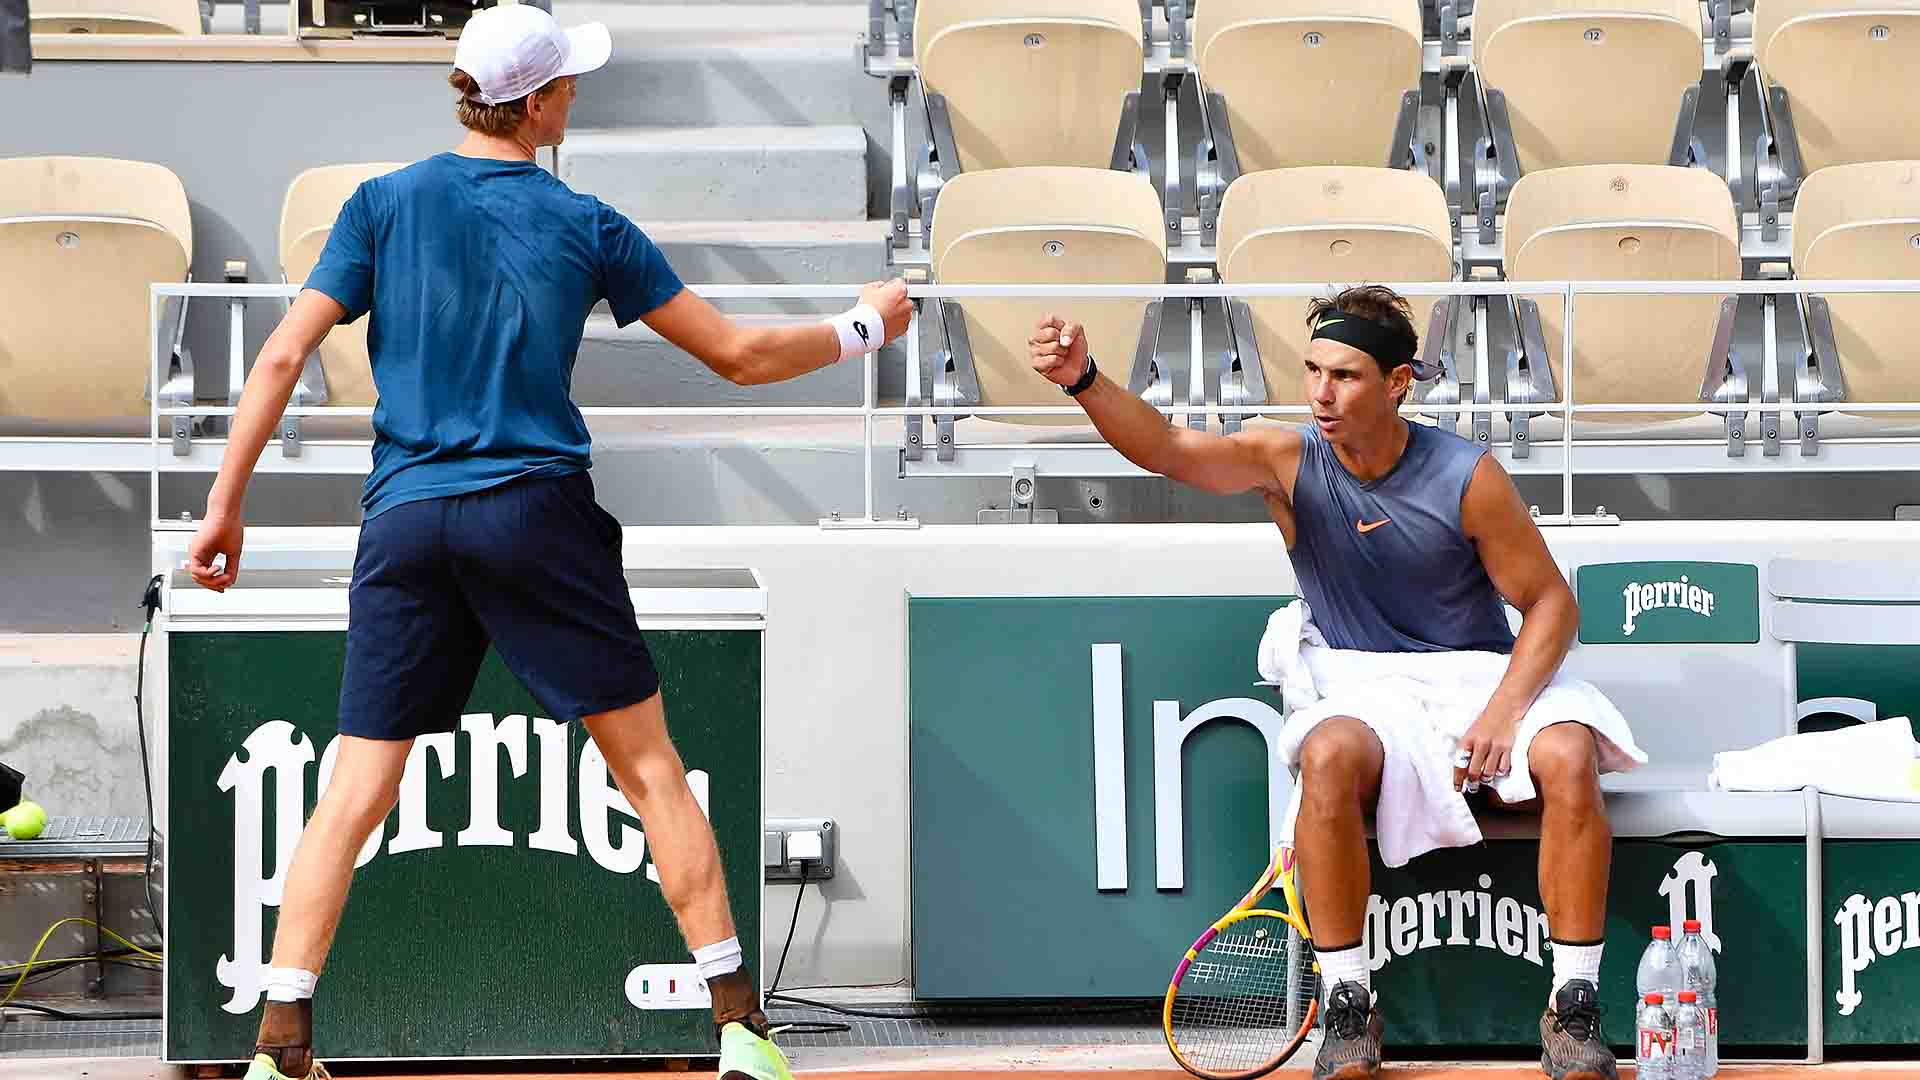 <a href='https://www.atptour.com/en/players/jannik-sinner/s0ag/overview'>Jannik Sinner</a> and <a href='https://www.atptour.com/en/players/rafael-nadal/n409/overview'>Rafael Nadal</a> bump fists during a practice session at <a href='https://www.atptour.com/en/tournaments/roland-garros/520/overview'>Roland Garros</a>.